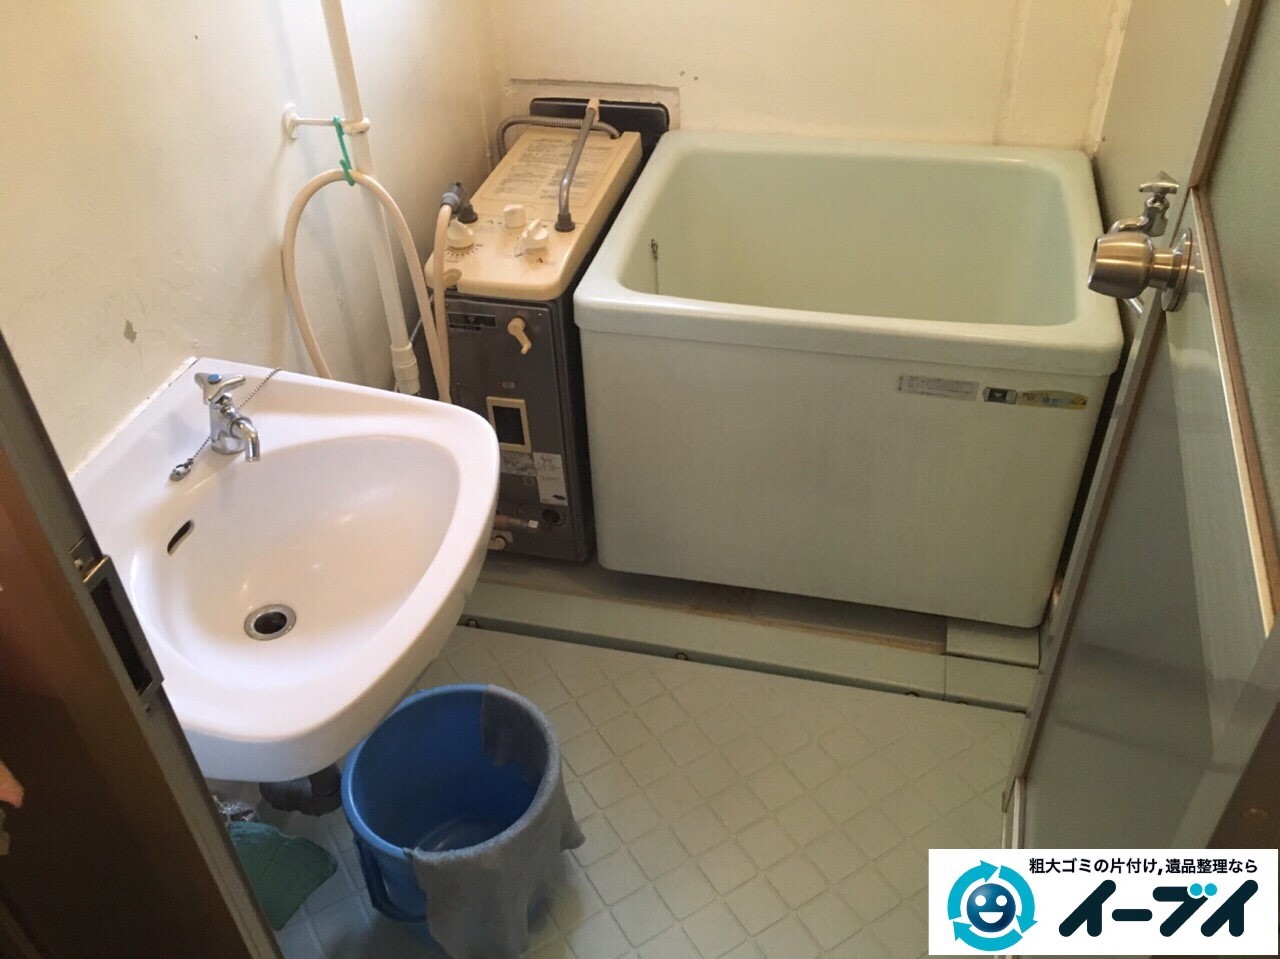 2017年3月16日大阪府大阪市住吉区で風呂釜と給湯器の取り外し不用品回収しました。写真2